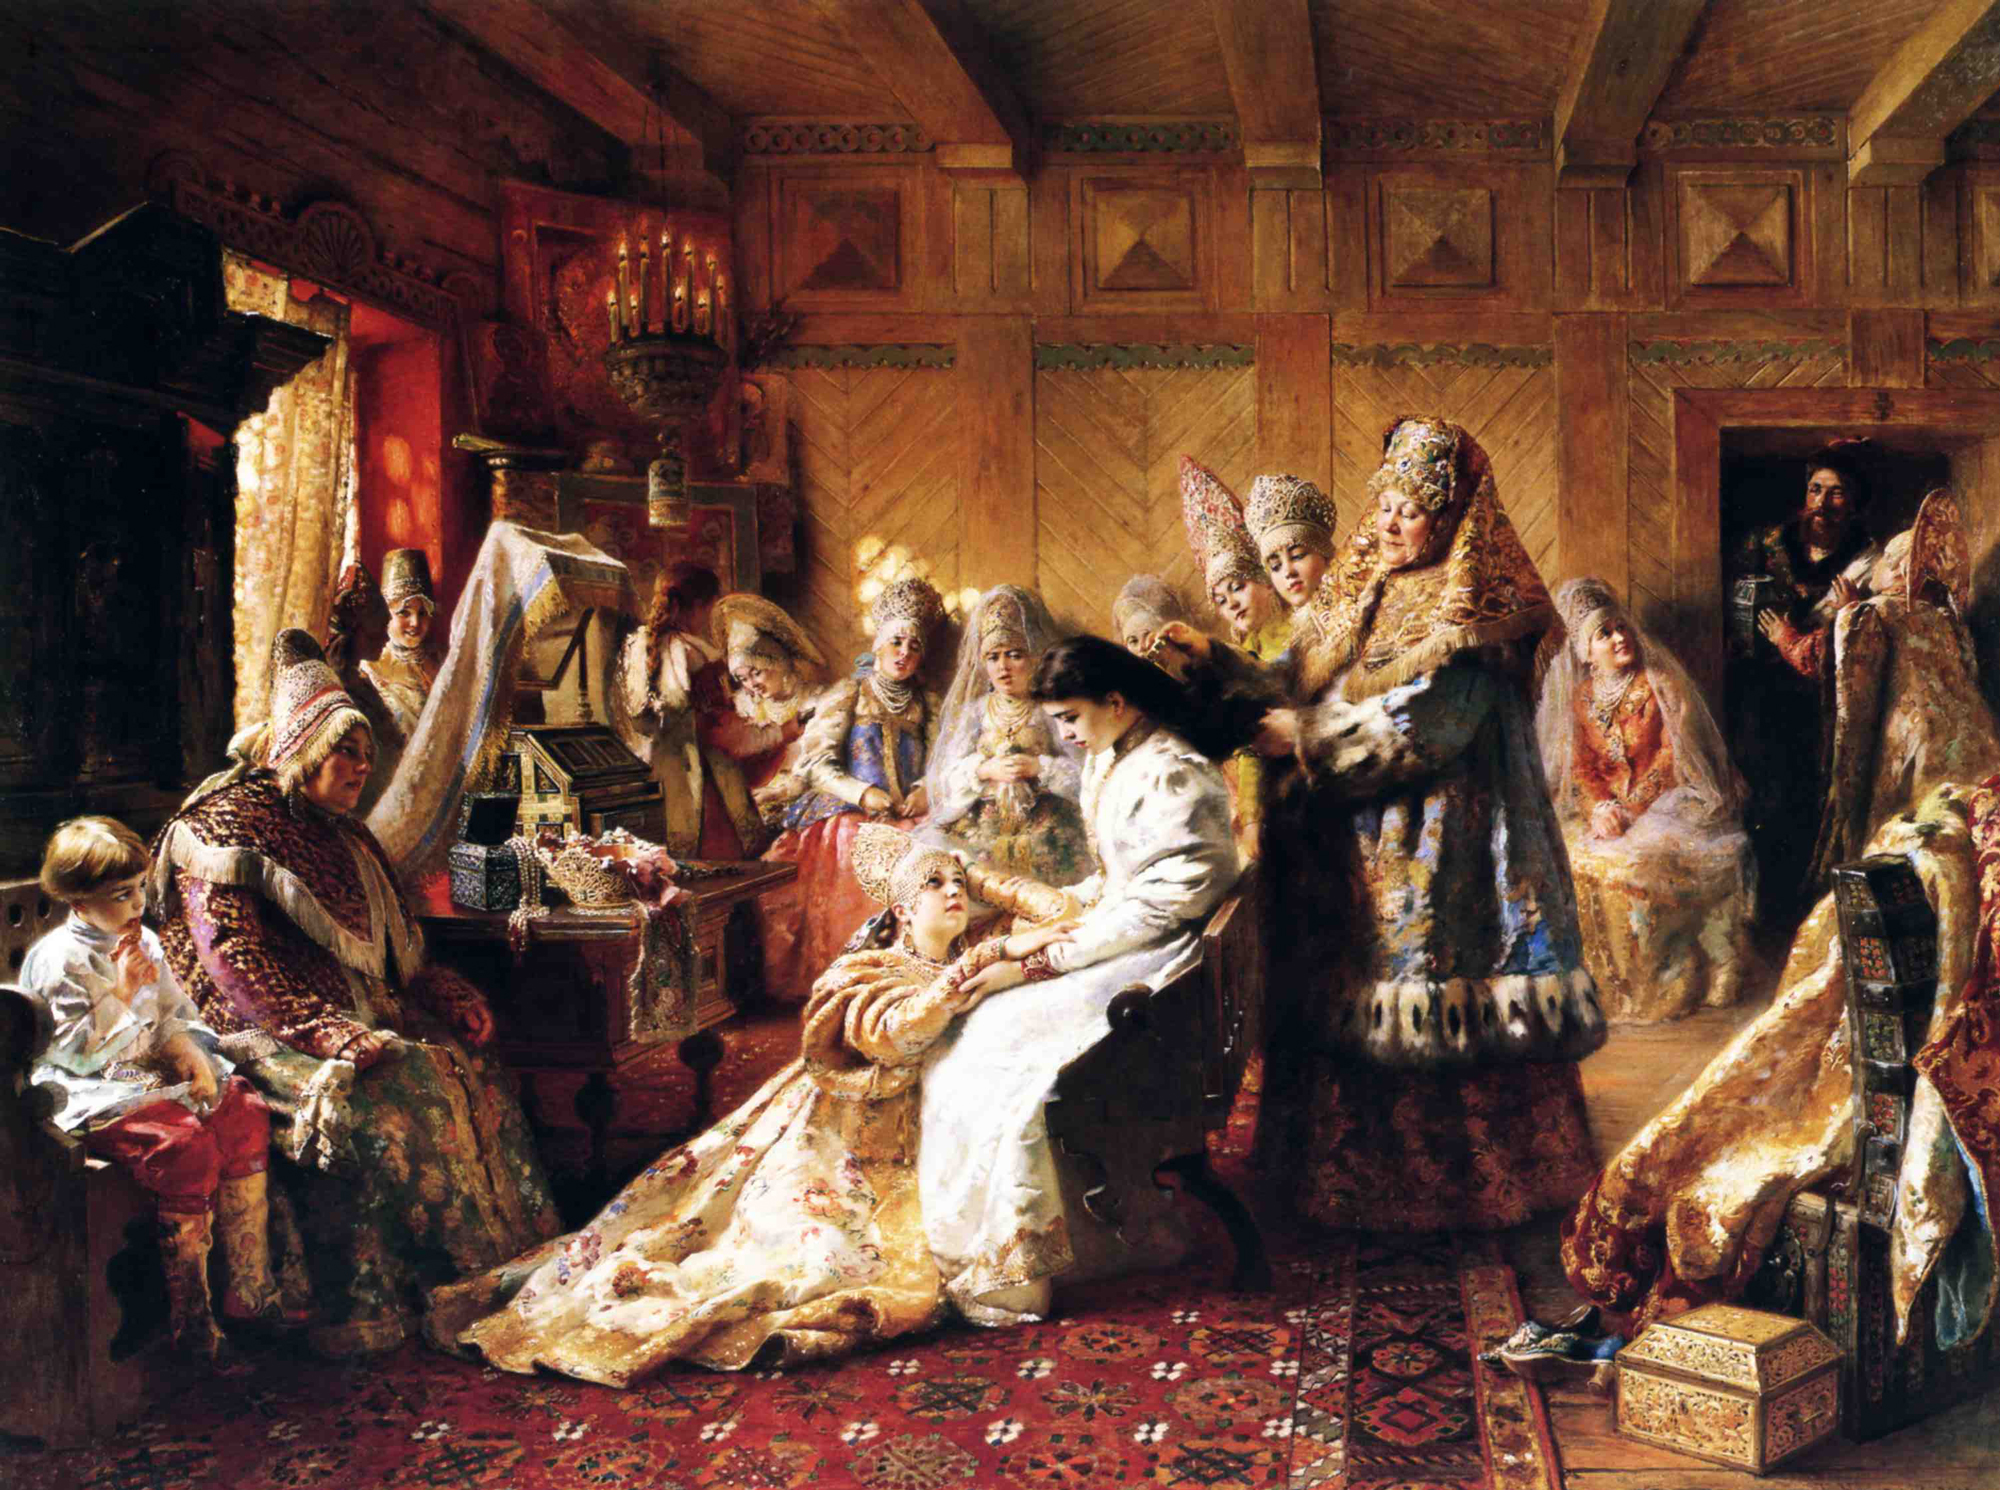   The Russian's Bride Attire , Konstantin Makovsky, 1889. 